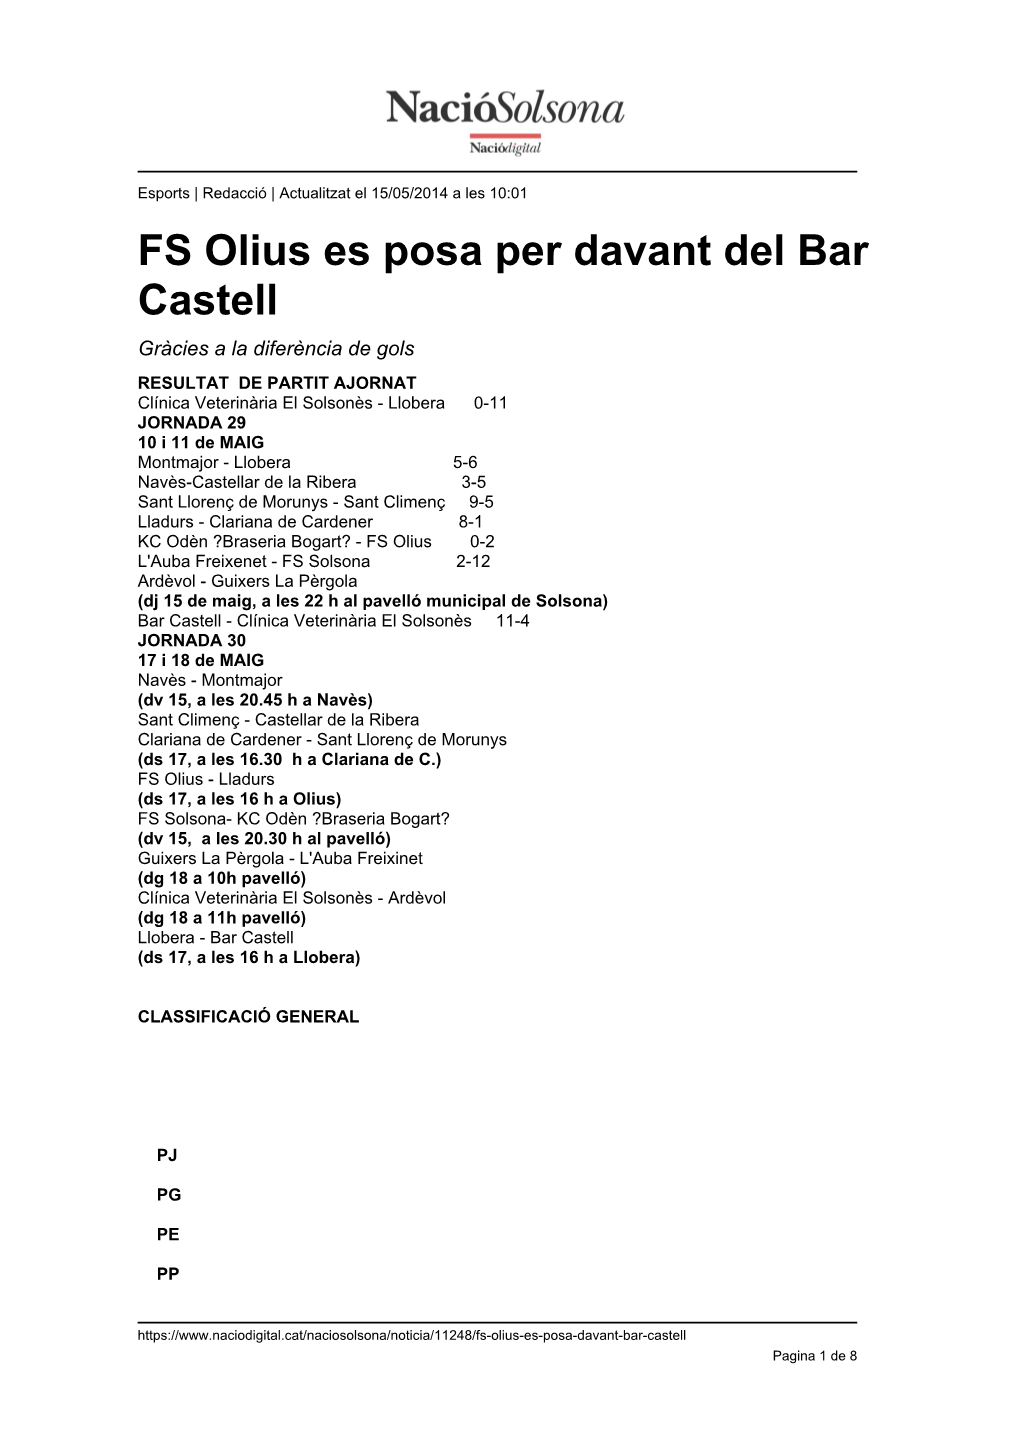 FS Olius Es Posa Per Davant Del Bar Castell